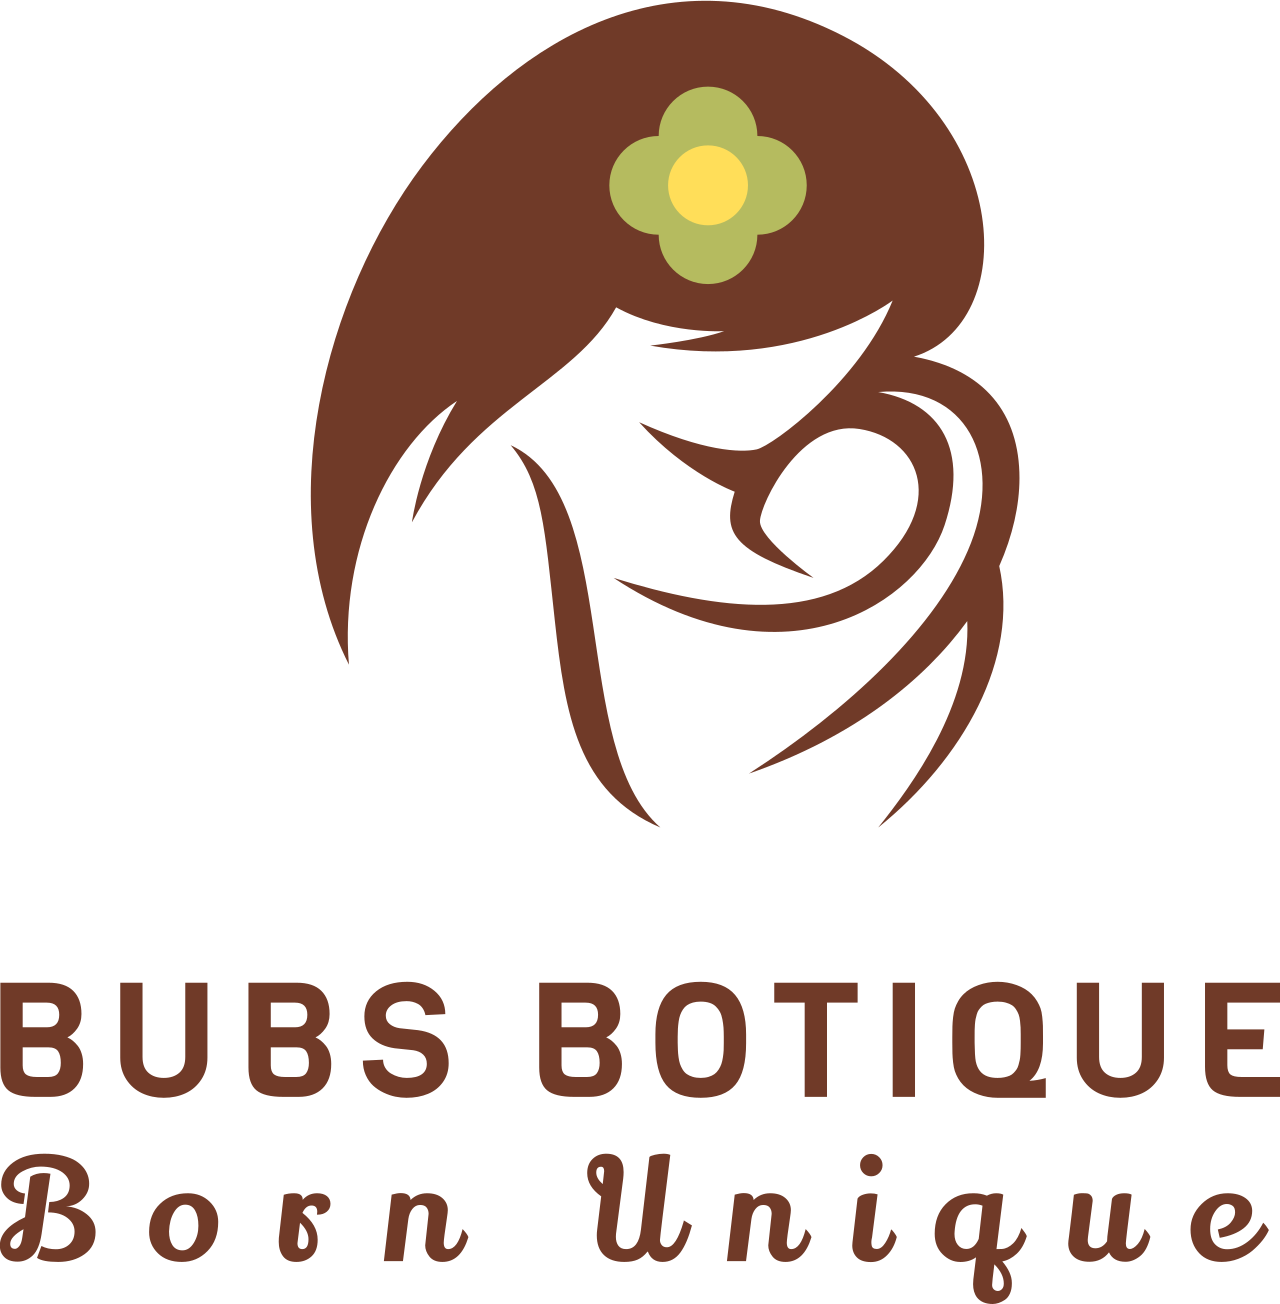 Bubs botique 's logo